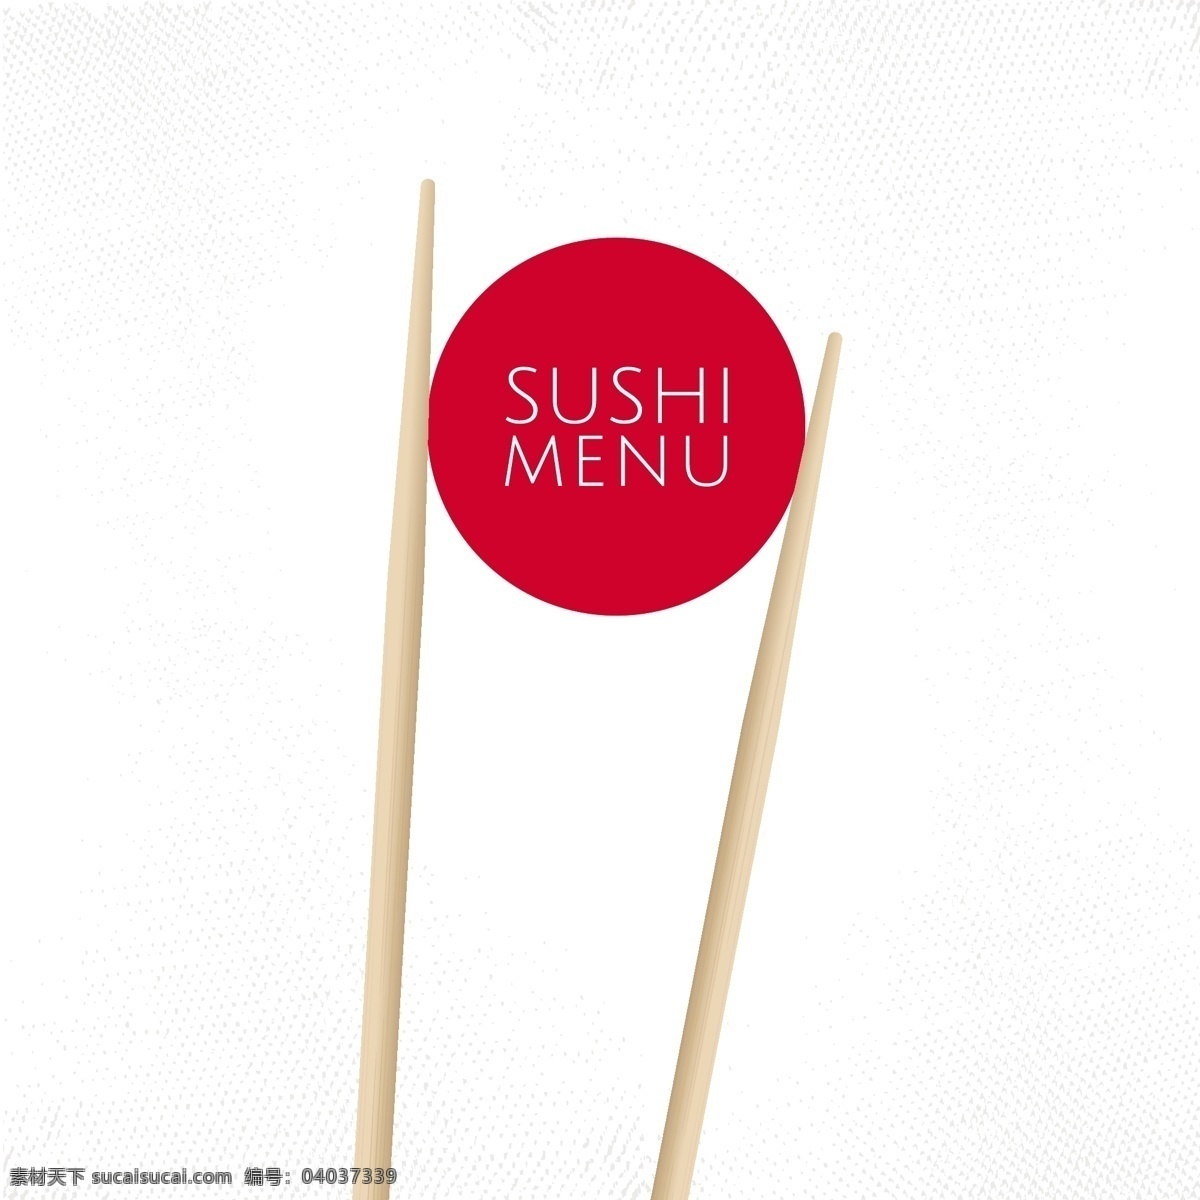 寿司菜单 日本料理 日餐 寿司 筷子 海鲜 美食 矢量餐饮美食 餐饮美食 生活百科 矢量 餐饮美食素材